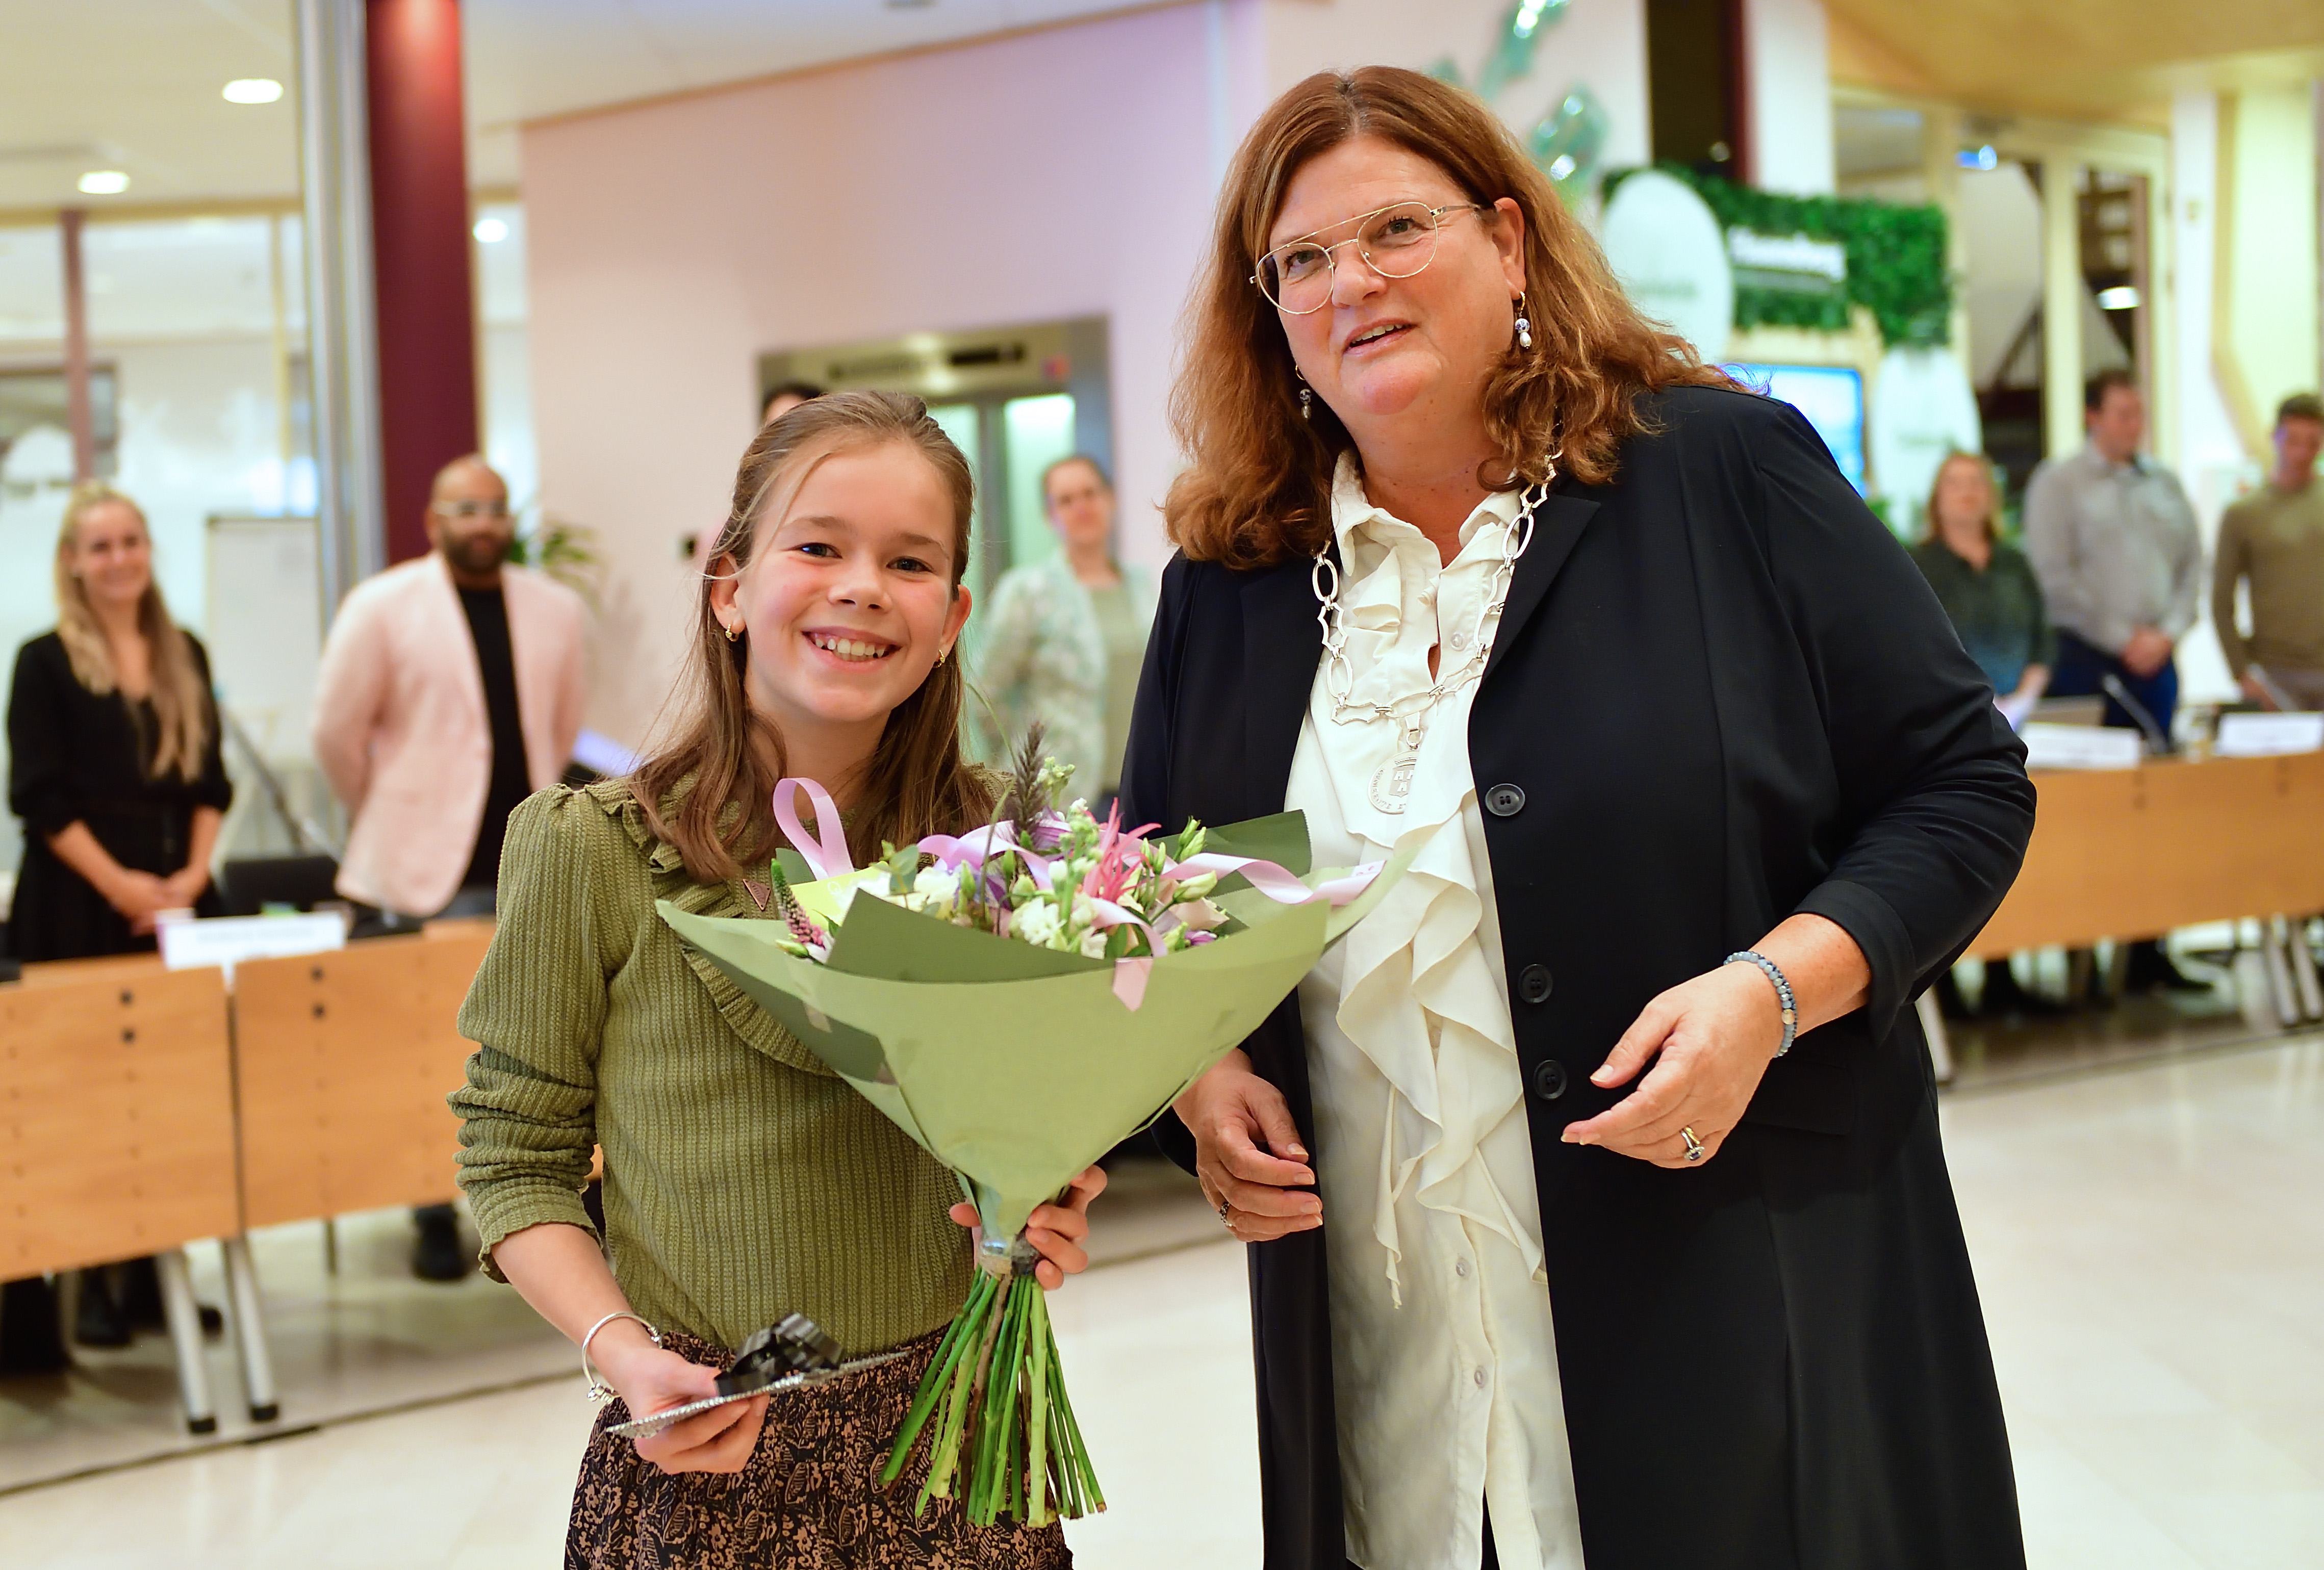 Burgemeester Marina Starmans geeft de nieuwe jeugdburgemeester Vieve van Kuijk een boeket bloemen